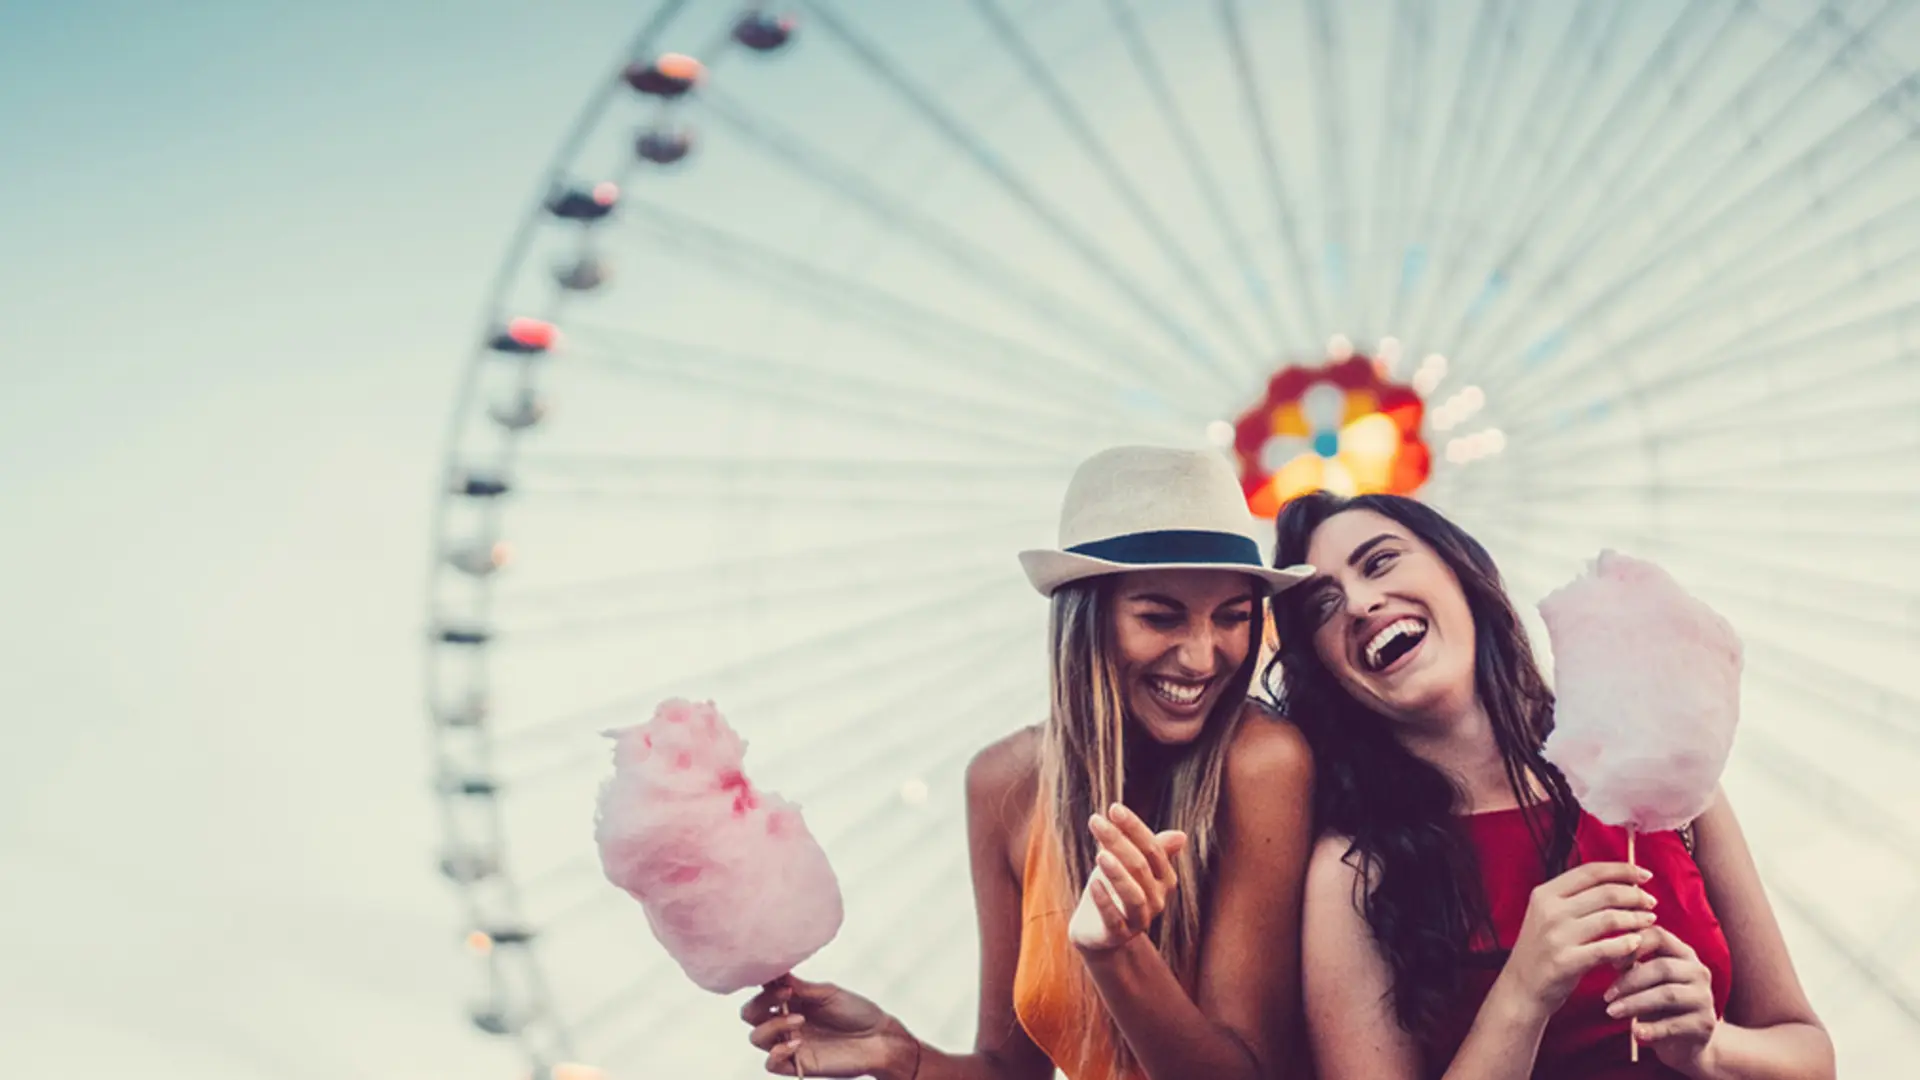 Zwei Freundinnen stehen vor einem Riesenrad und essen Zuckerwatte gemeinsam. Sie freuen sich über die Vorteile bei der NEW Energie.